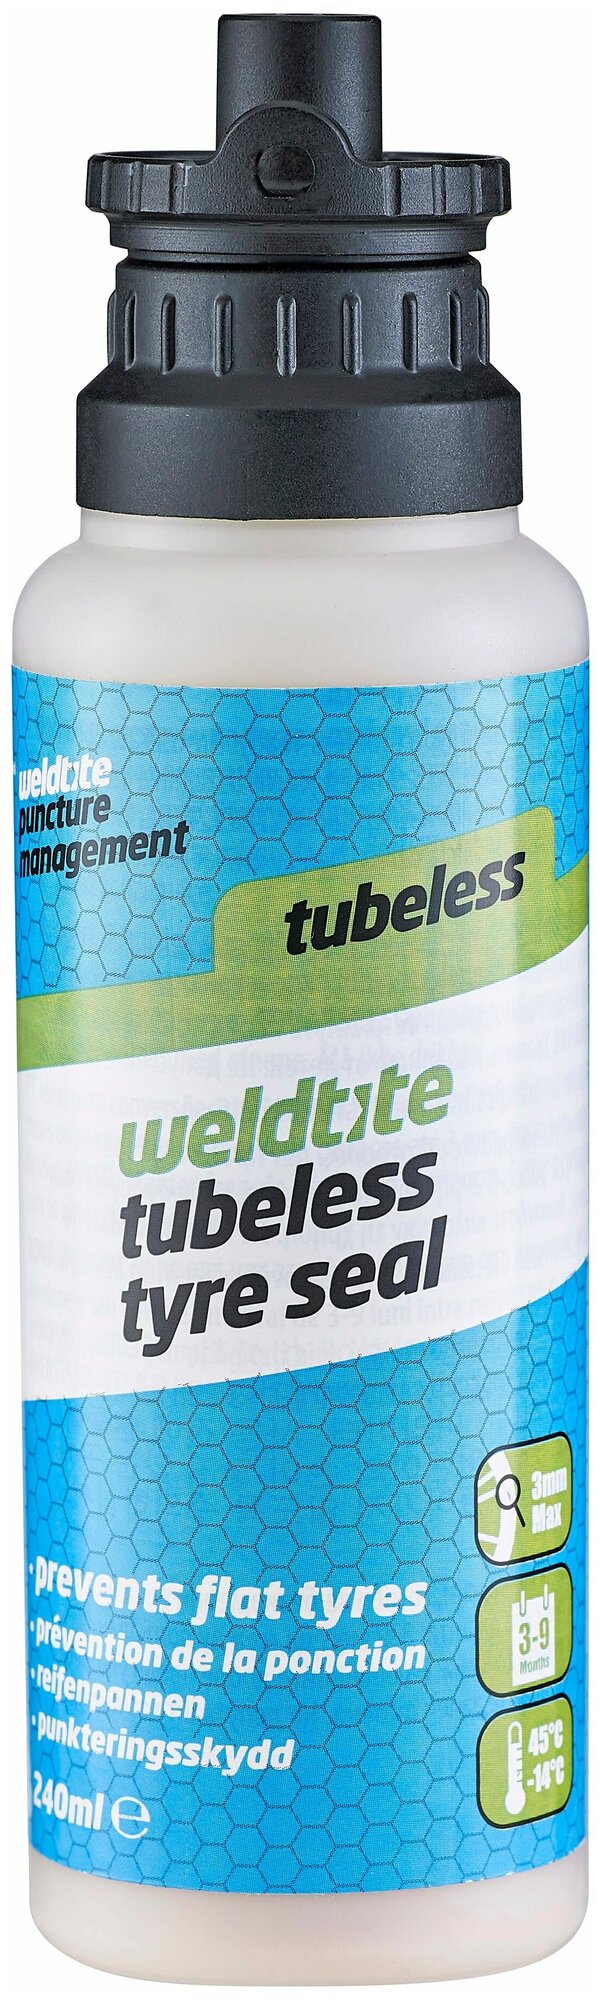 Герметик для бескамерных покрышек Weldtite Tubeless Tyre Sealant, 240 мл.